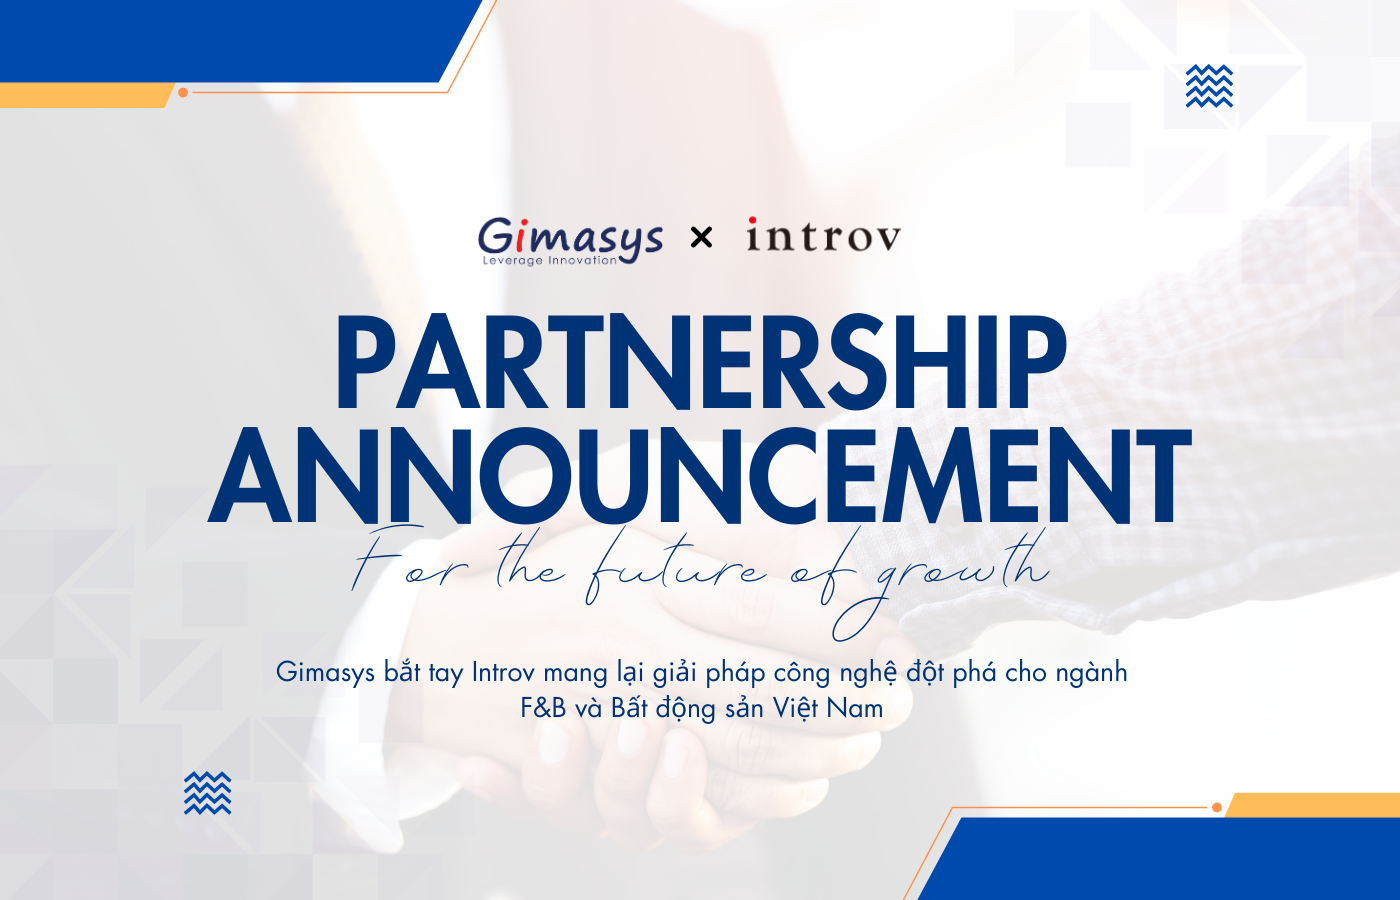 Gimasys bắt tay Introv mang lại giải pháp công nghệ đột phá cho ngành F&B và Bất động sản Việt Nam